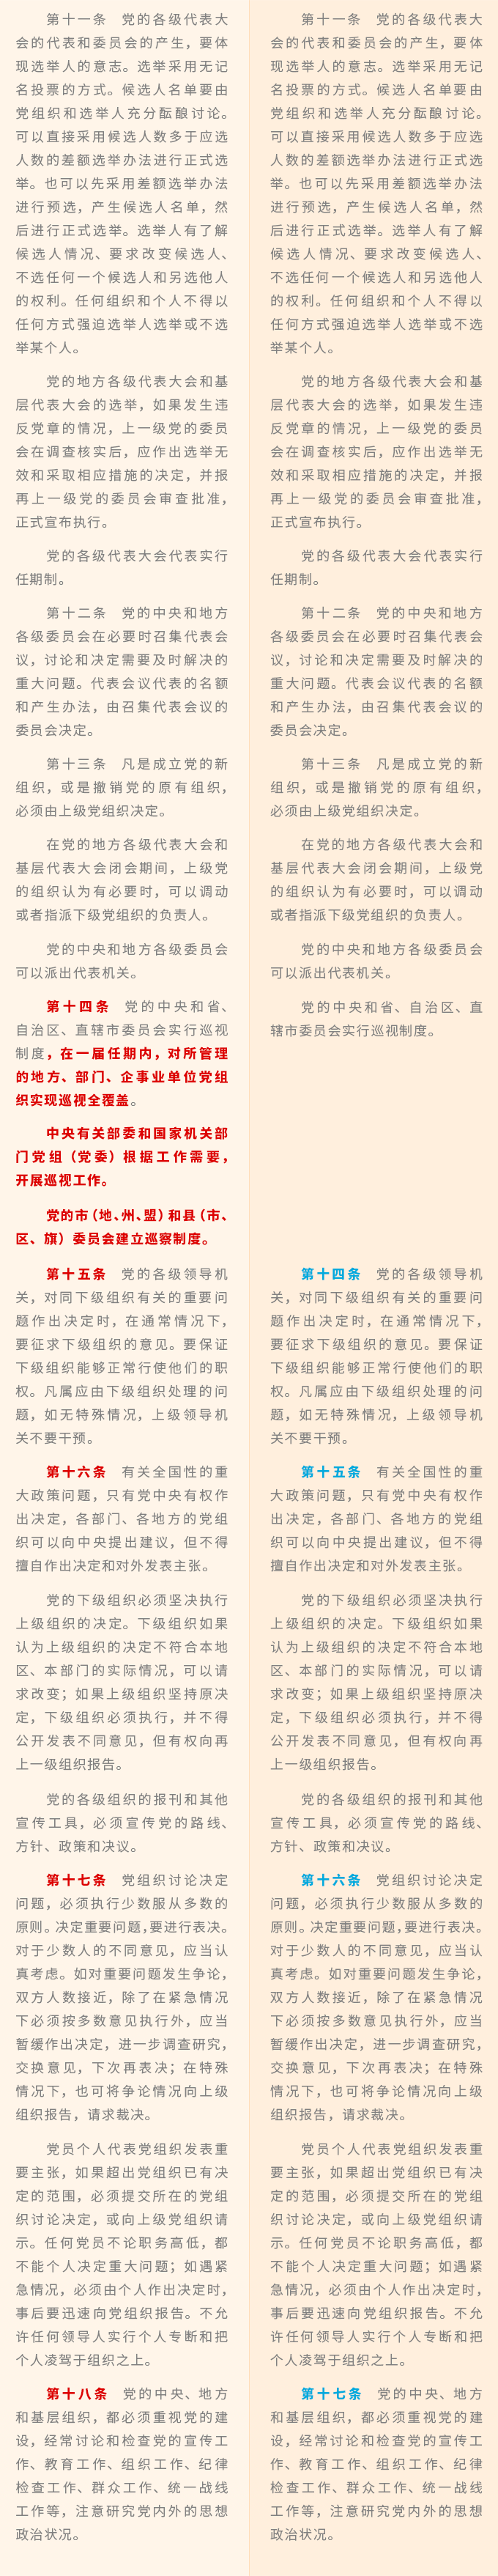 中国共产党章程9.png